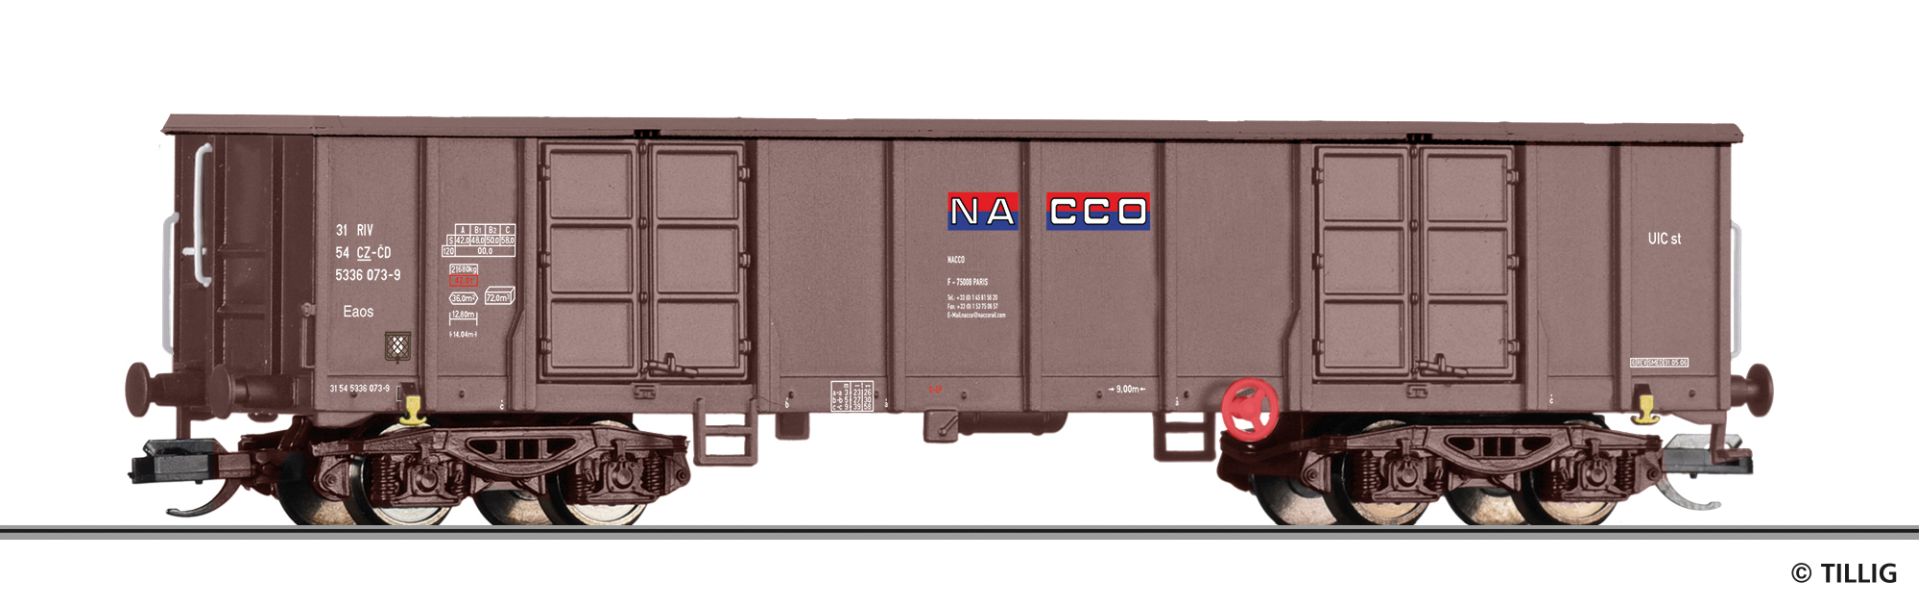 Tillig 18228 - Offener Güterwagen Eaos, NACCO, Ep.VI